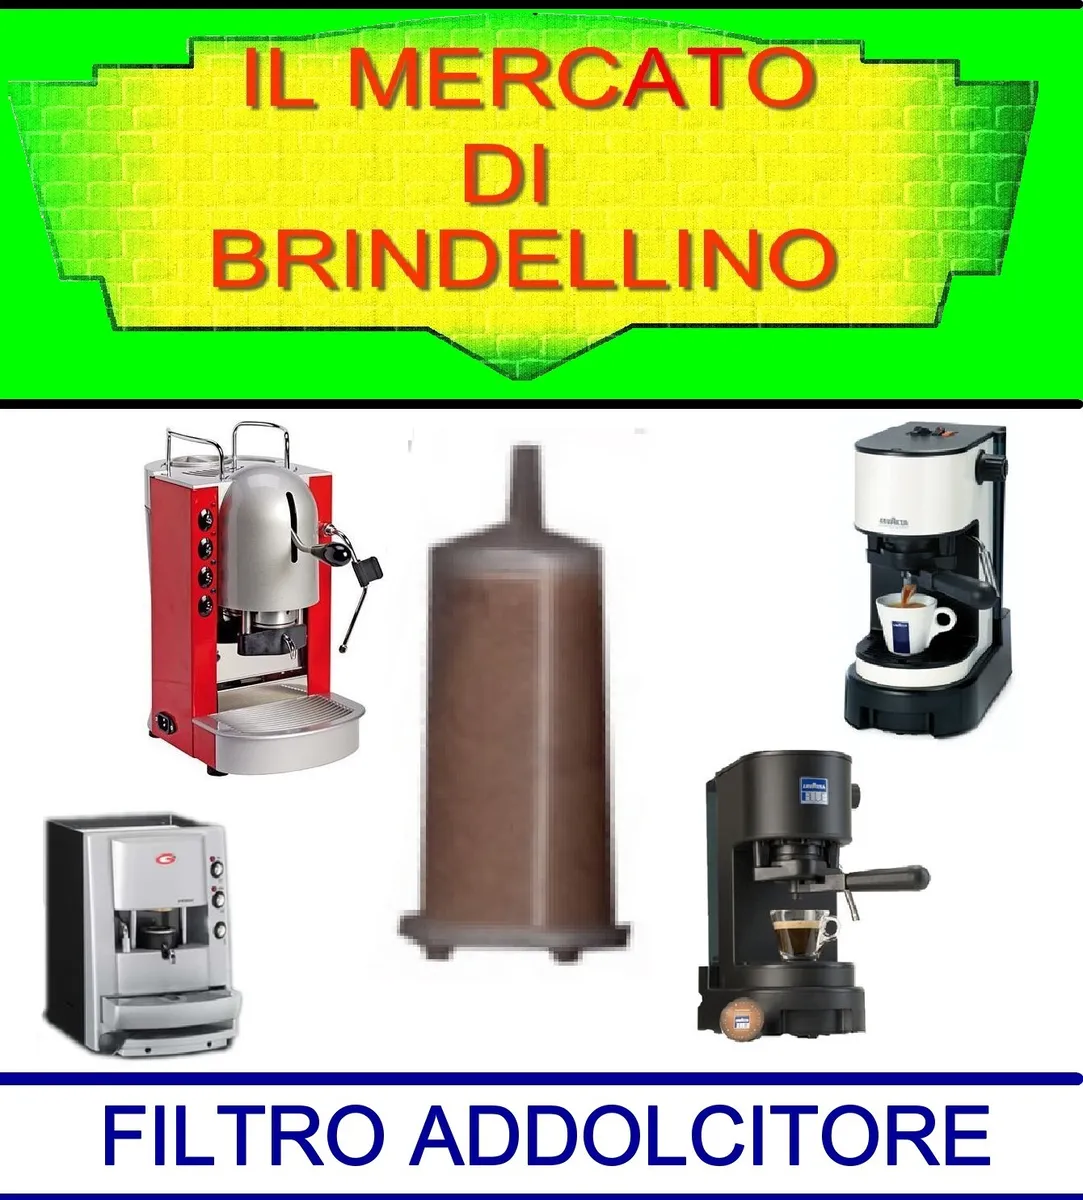 30 FILTRO ADDOLCITORE ANTICALCARE MACCHINE CAFFE LAVAZZA LB800 EP800 GRIMAC  SPIN